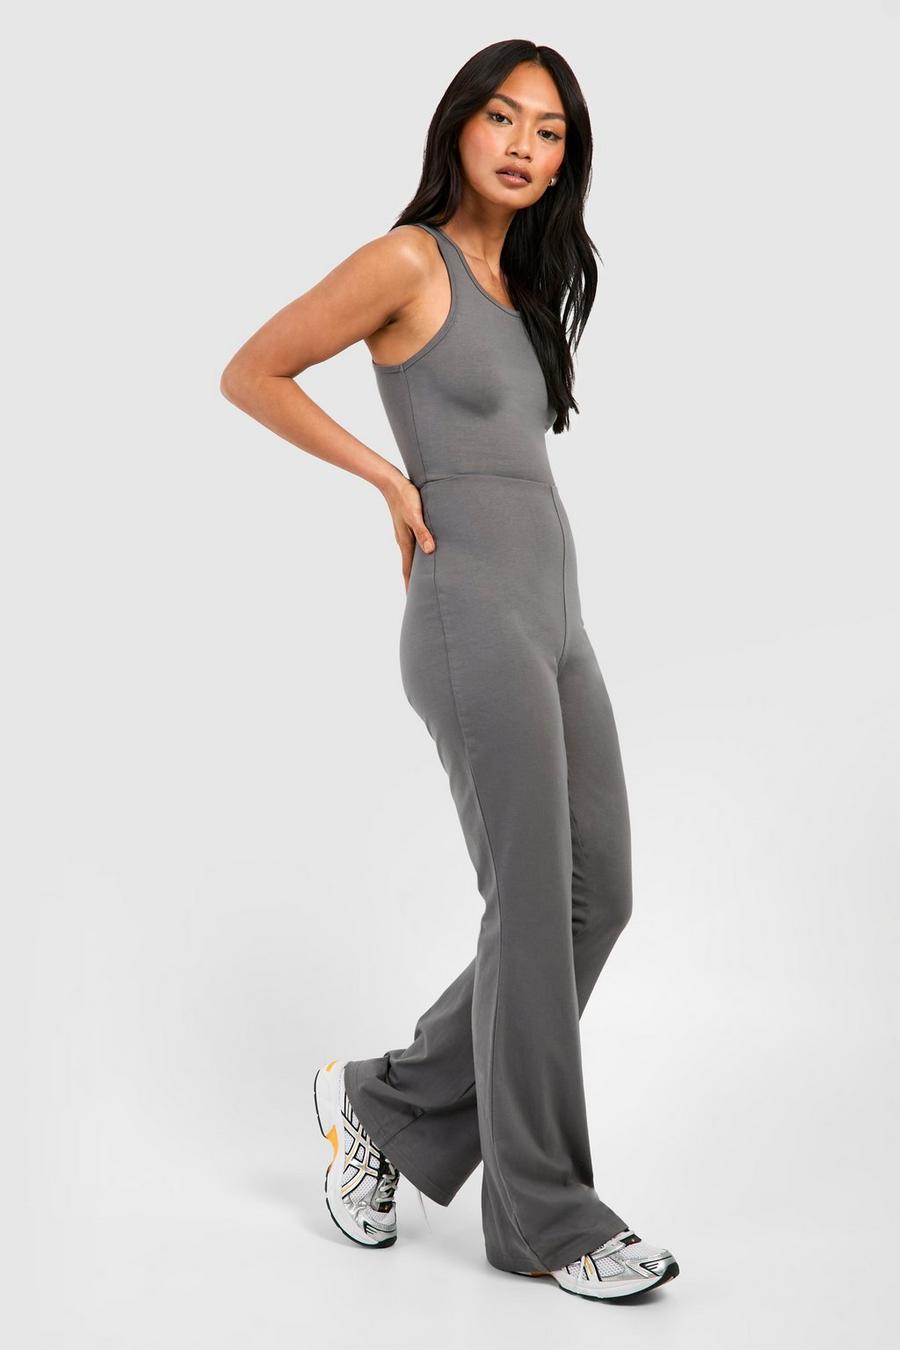 Charcoal Grey Jumpsuit - Sleeveless Jumpsuit - Culotte Jumpsuit